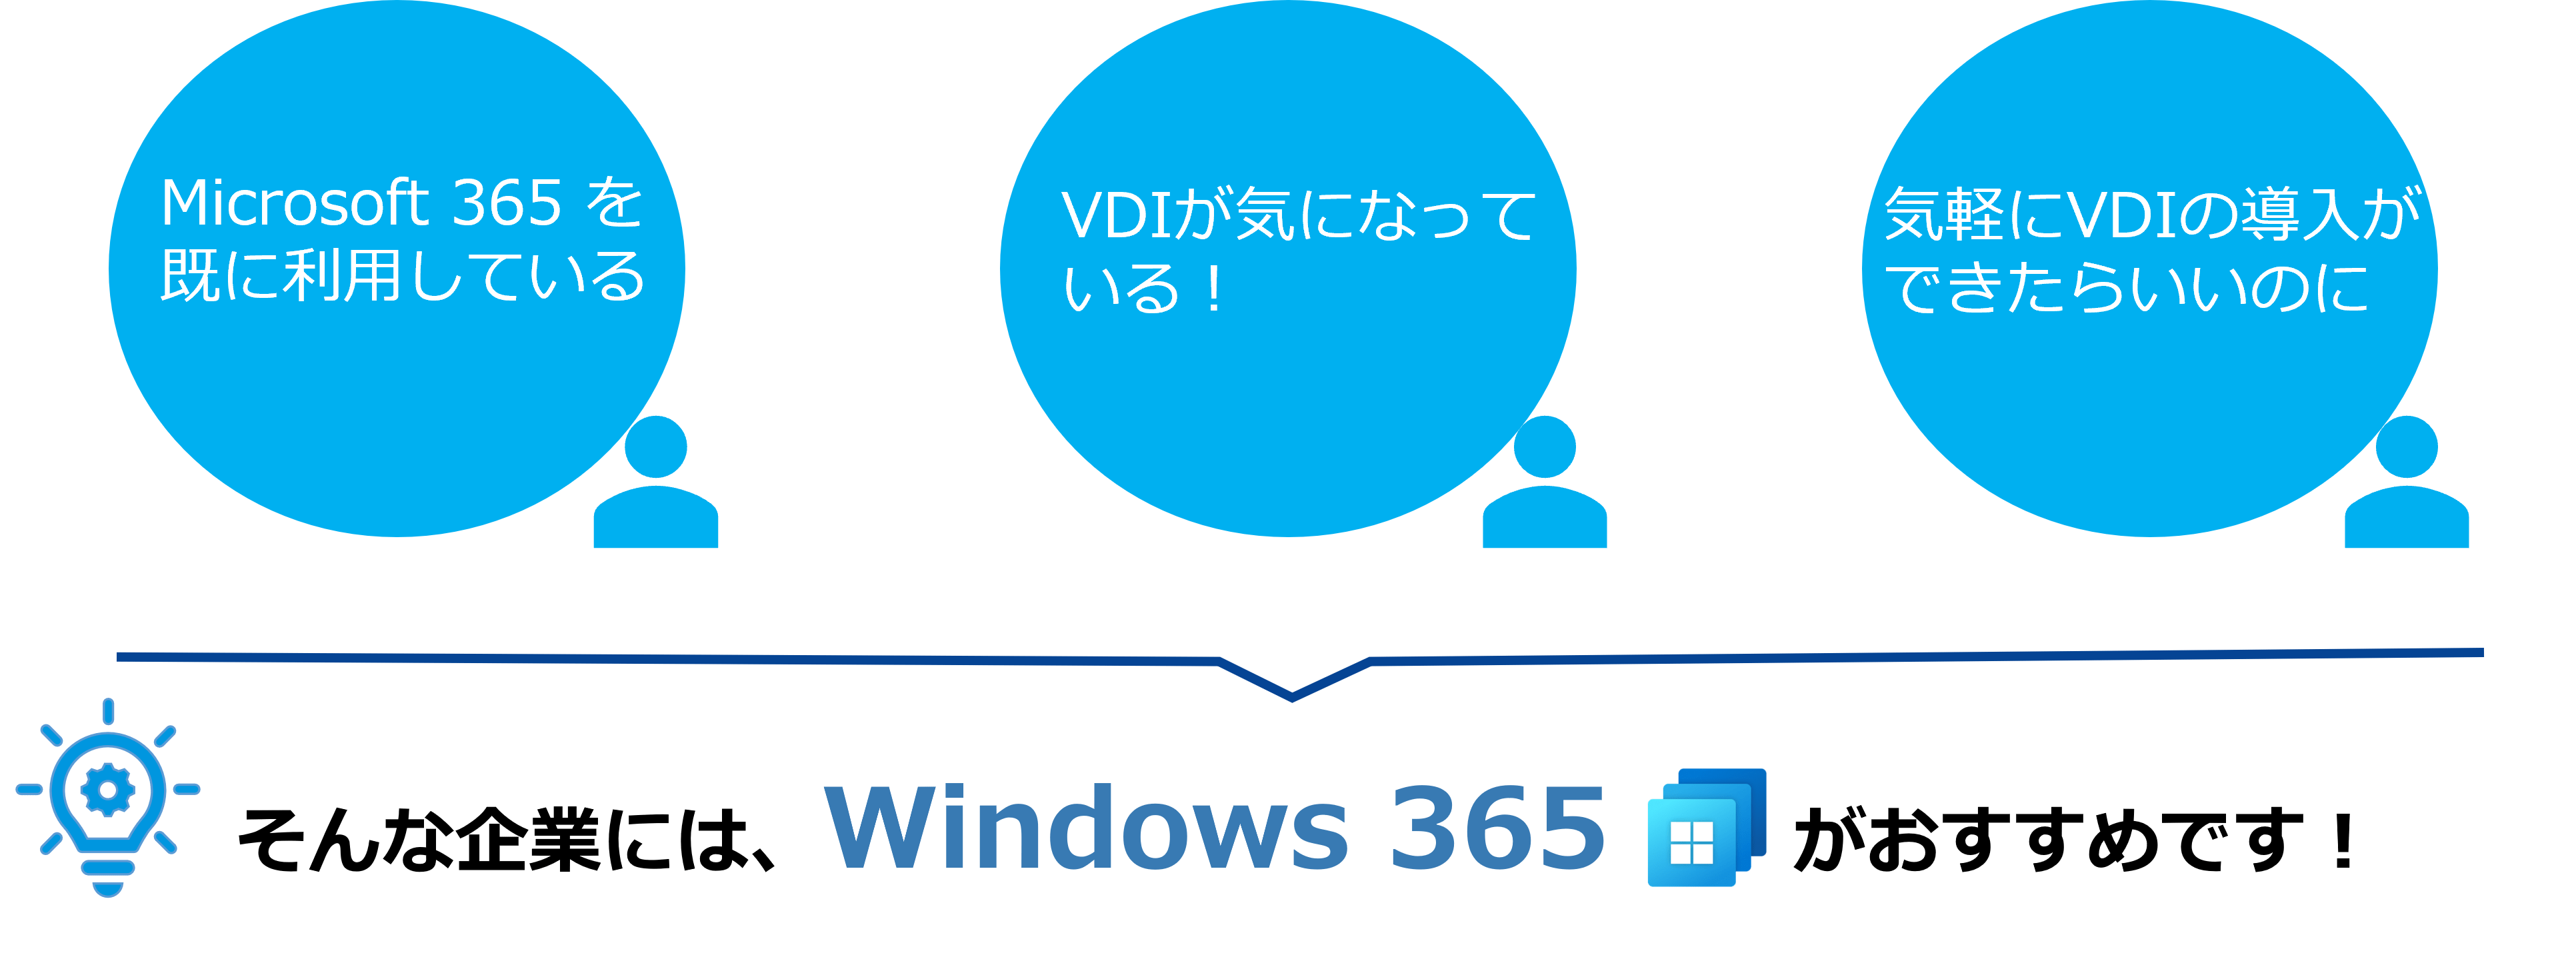 Windows 365 導入ポイント